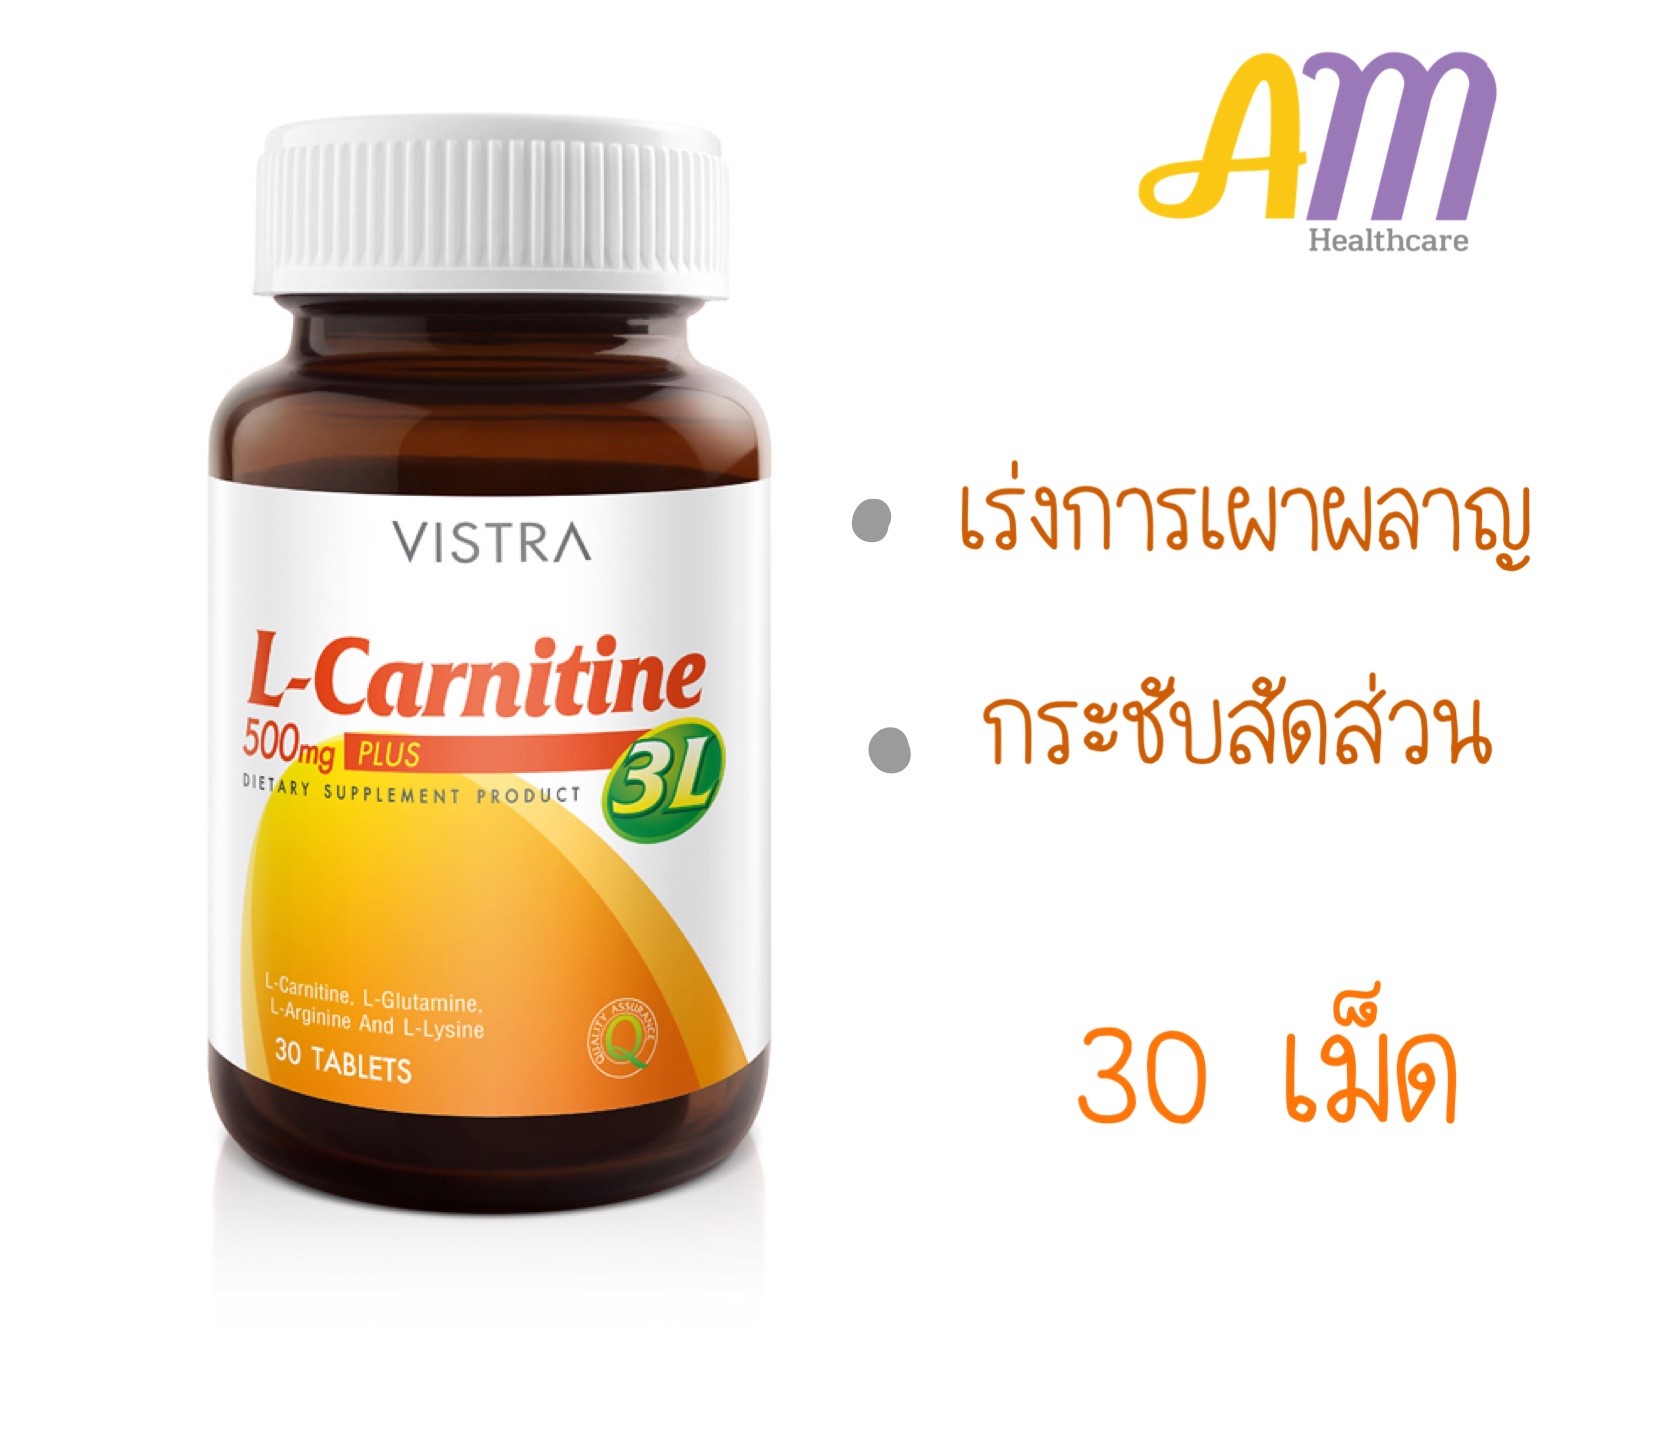 Vistra L-Carnitine 500 plus 3L วิสทร้า แอล-คาร์นิทีน 500 พลัส 3 แอล บรรจุ 30 เม็ด